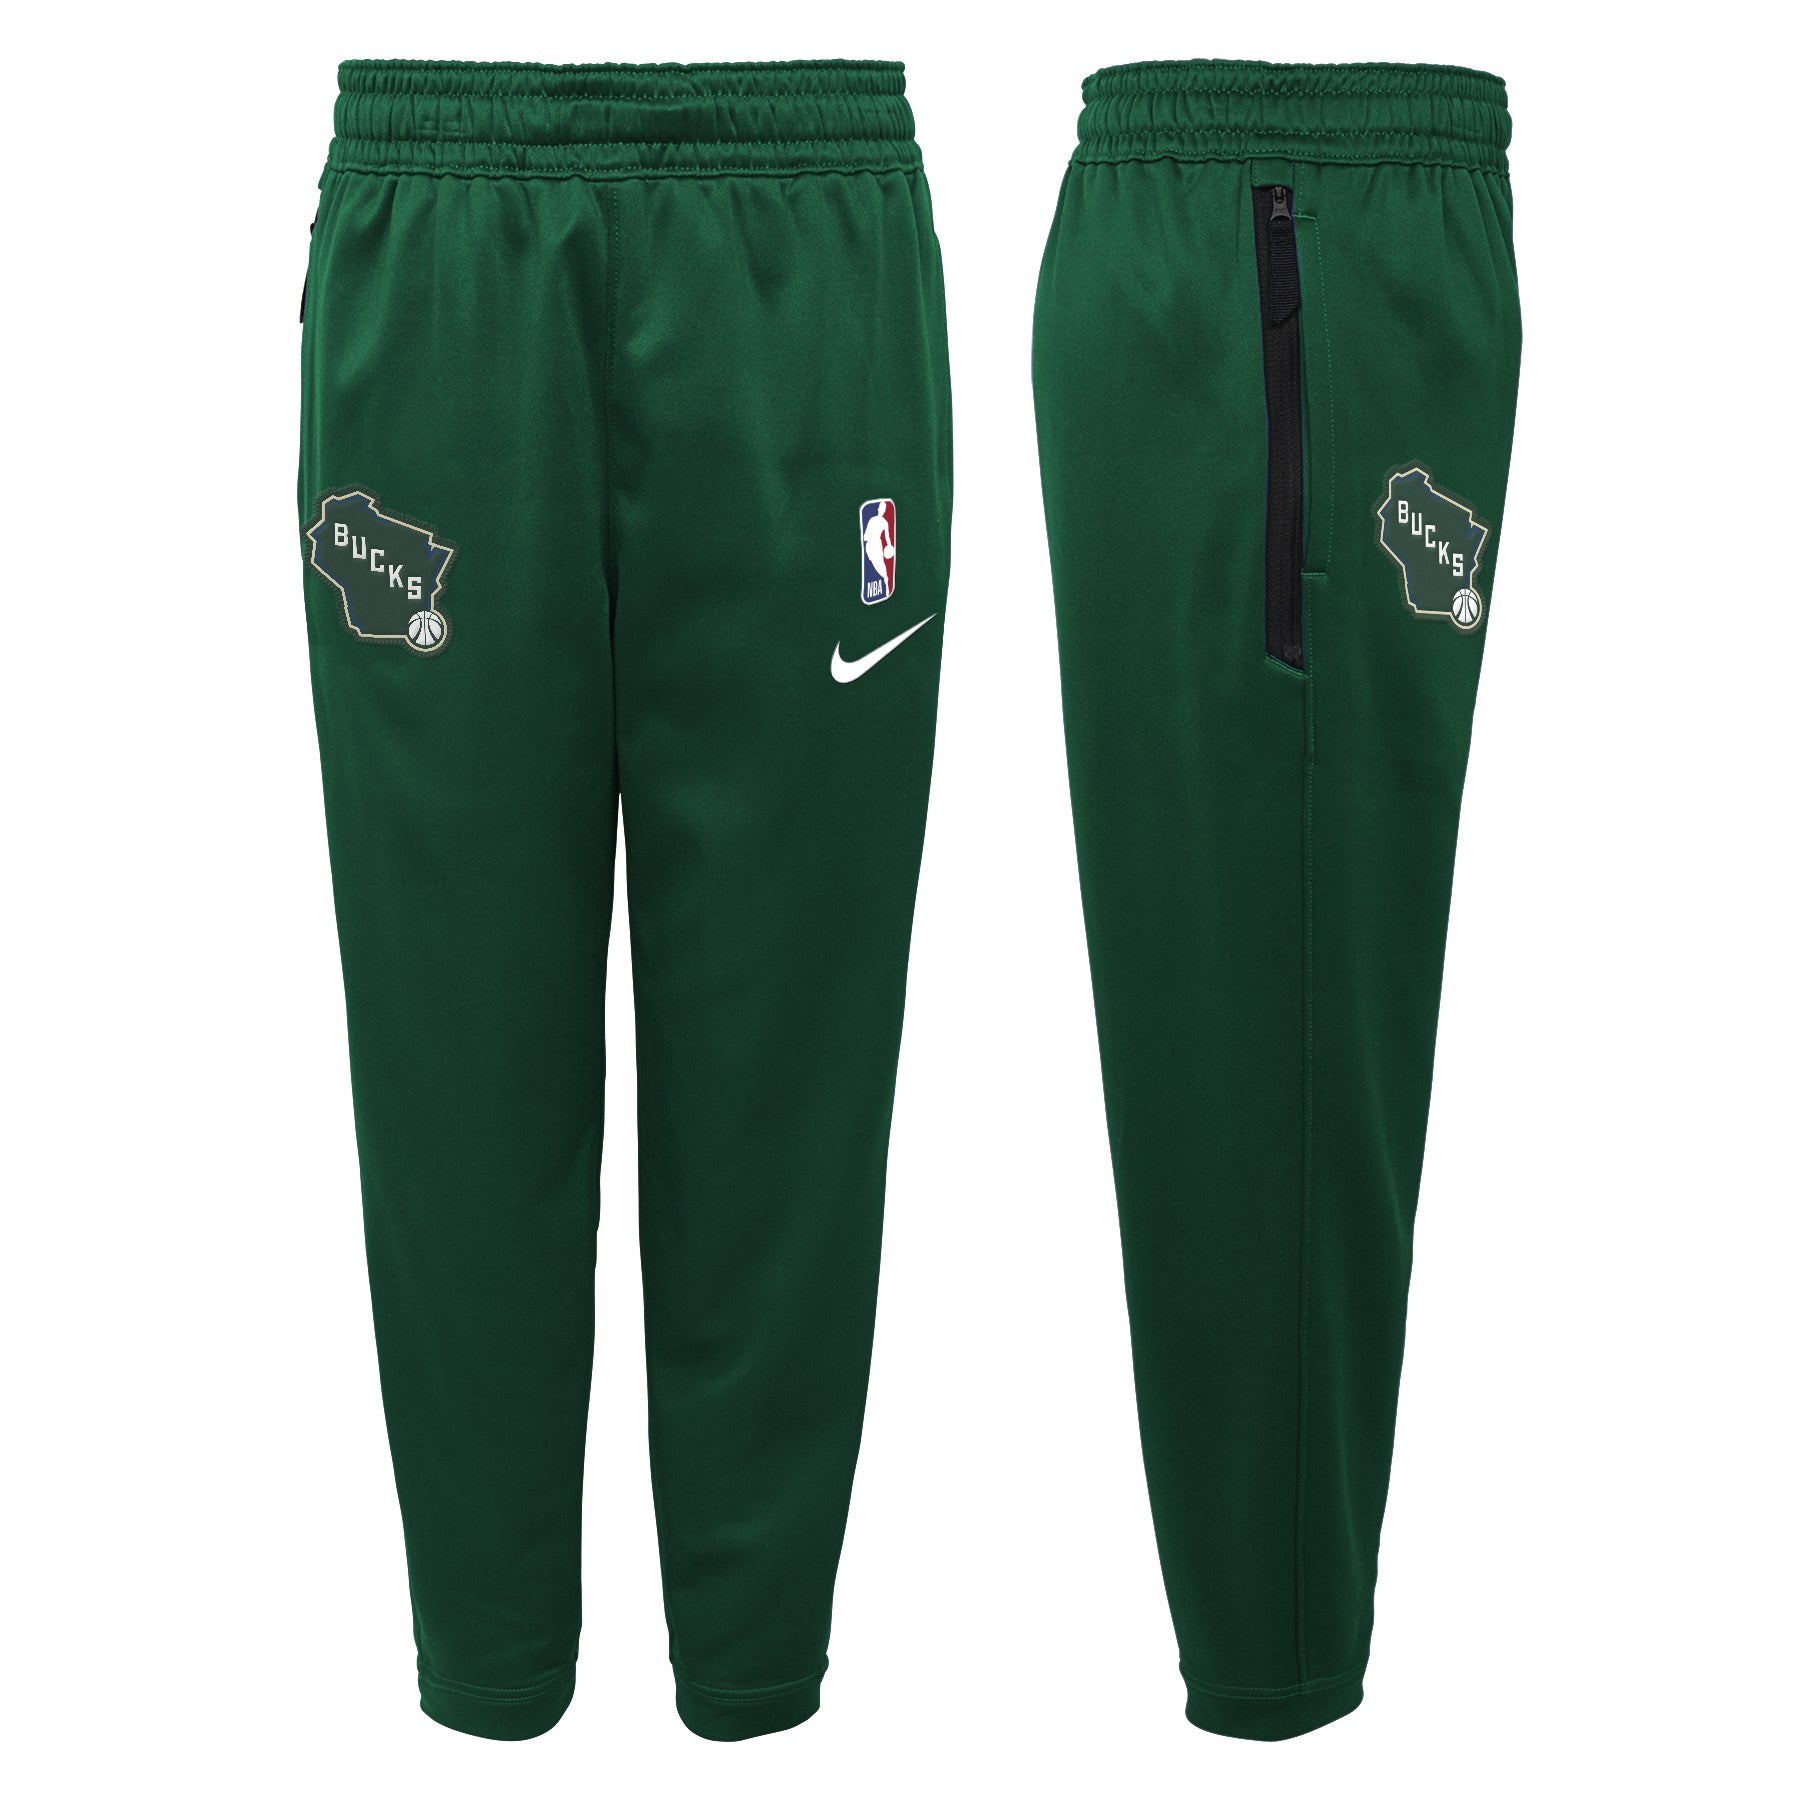 Boston Celtics Spotlight Men's Nike Dri-FIT NBA Pants.